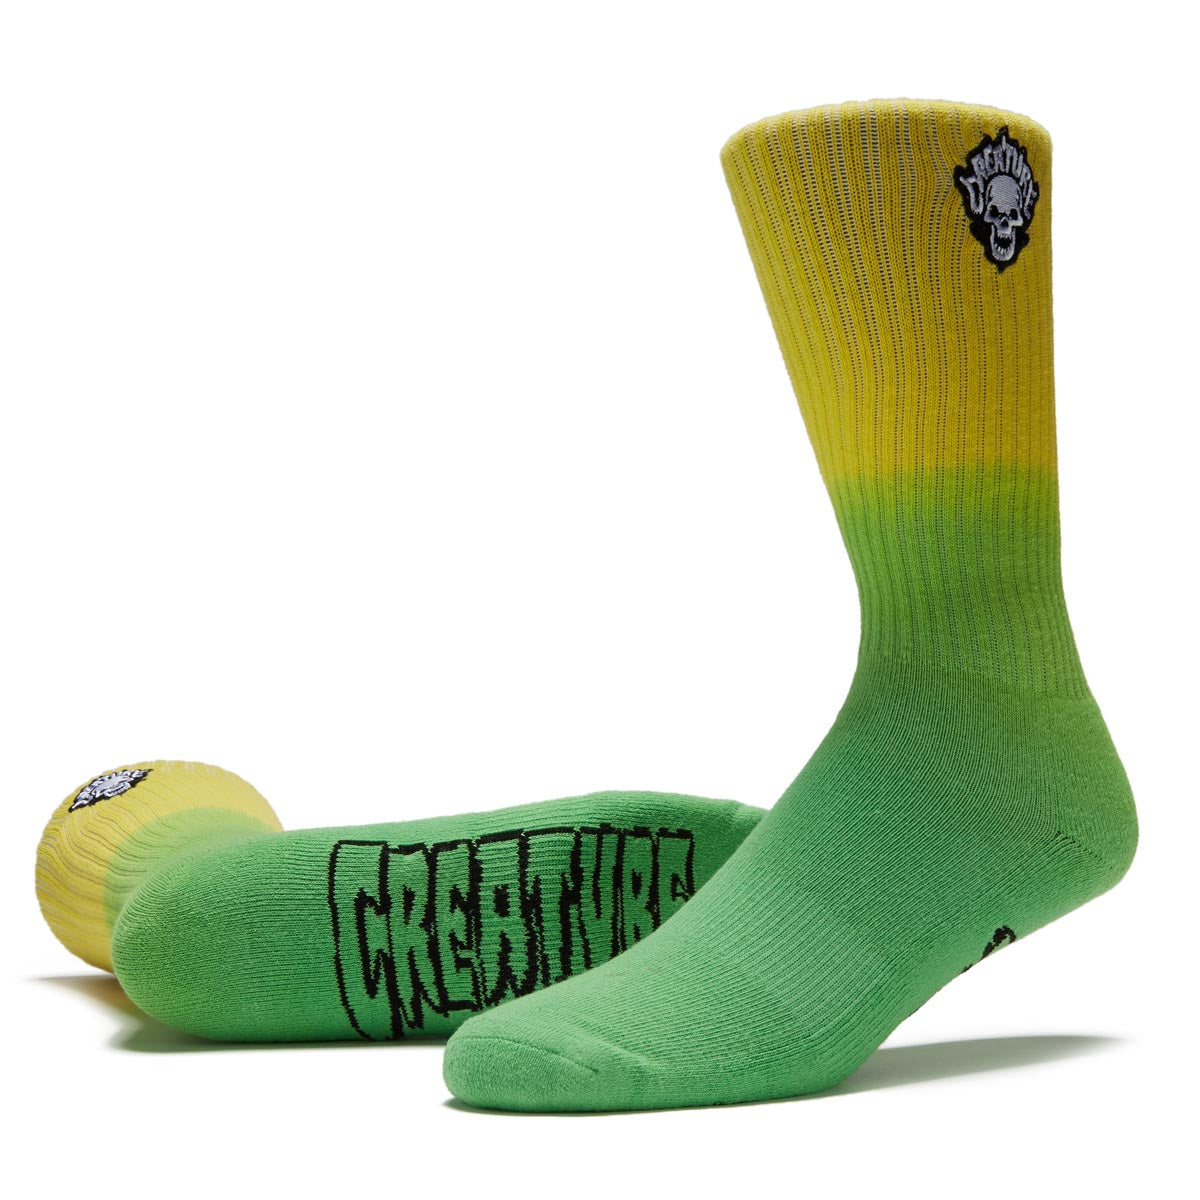 Creature Bonehead Flame Crew Socks - Yellow/Green Fade image 2